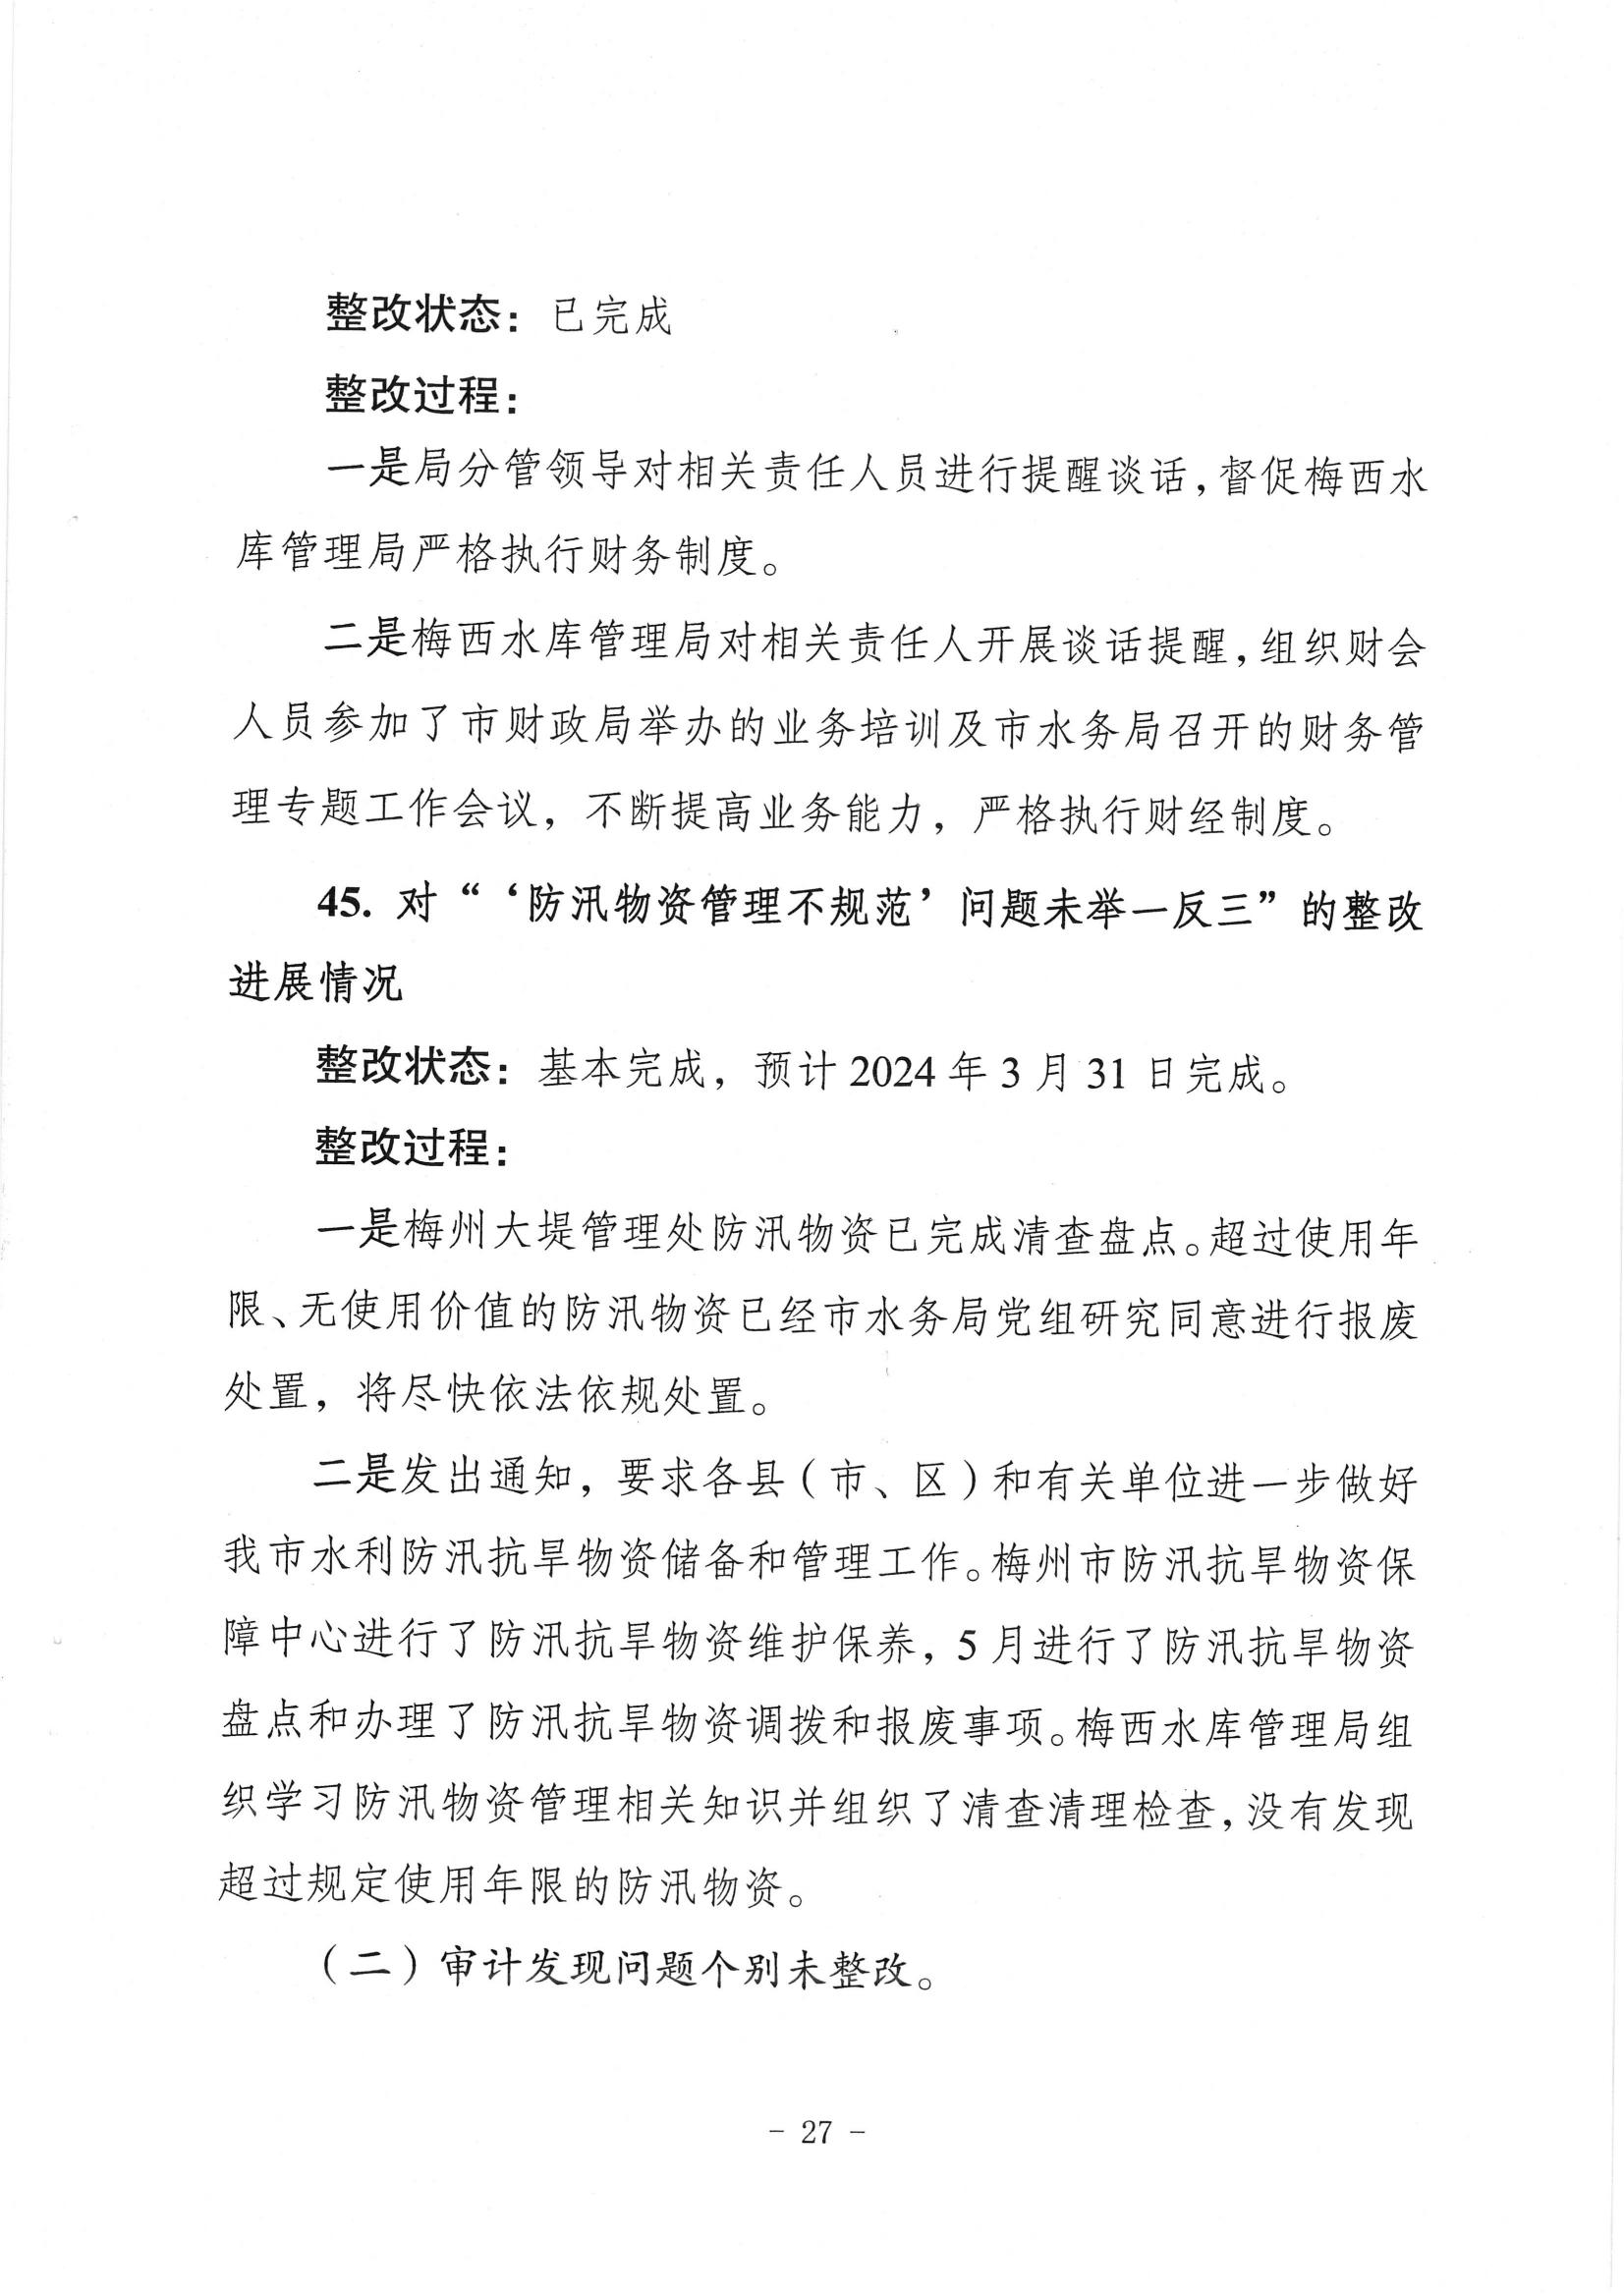 中共梅州市水务局党组关于落实八届市委第三轮巡察反馈意见的整改进展情况报告_26.jpg